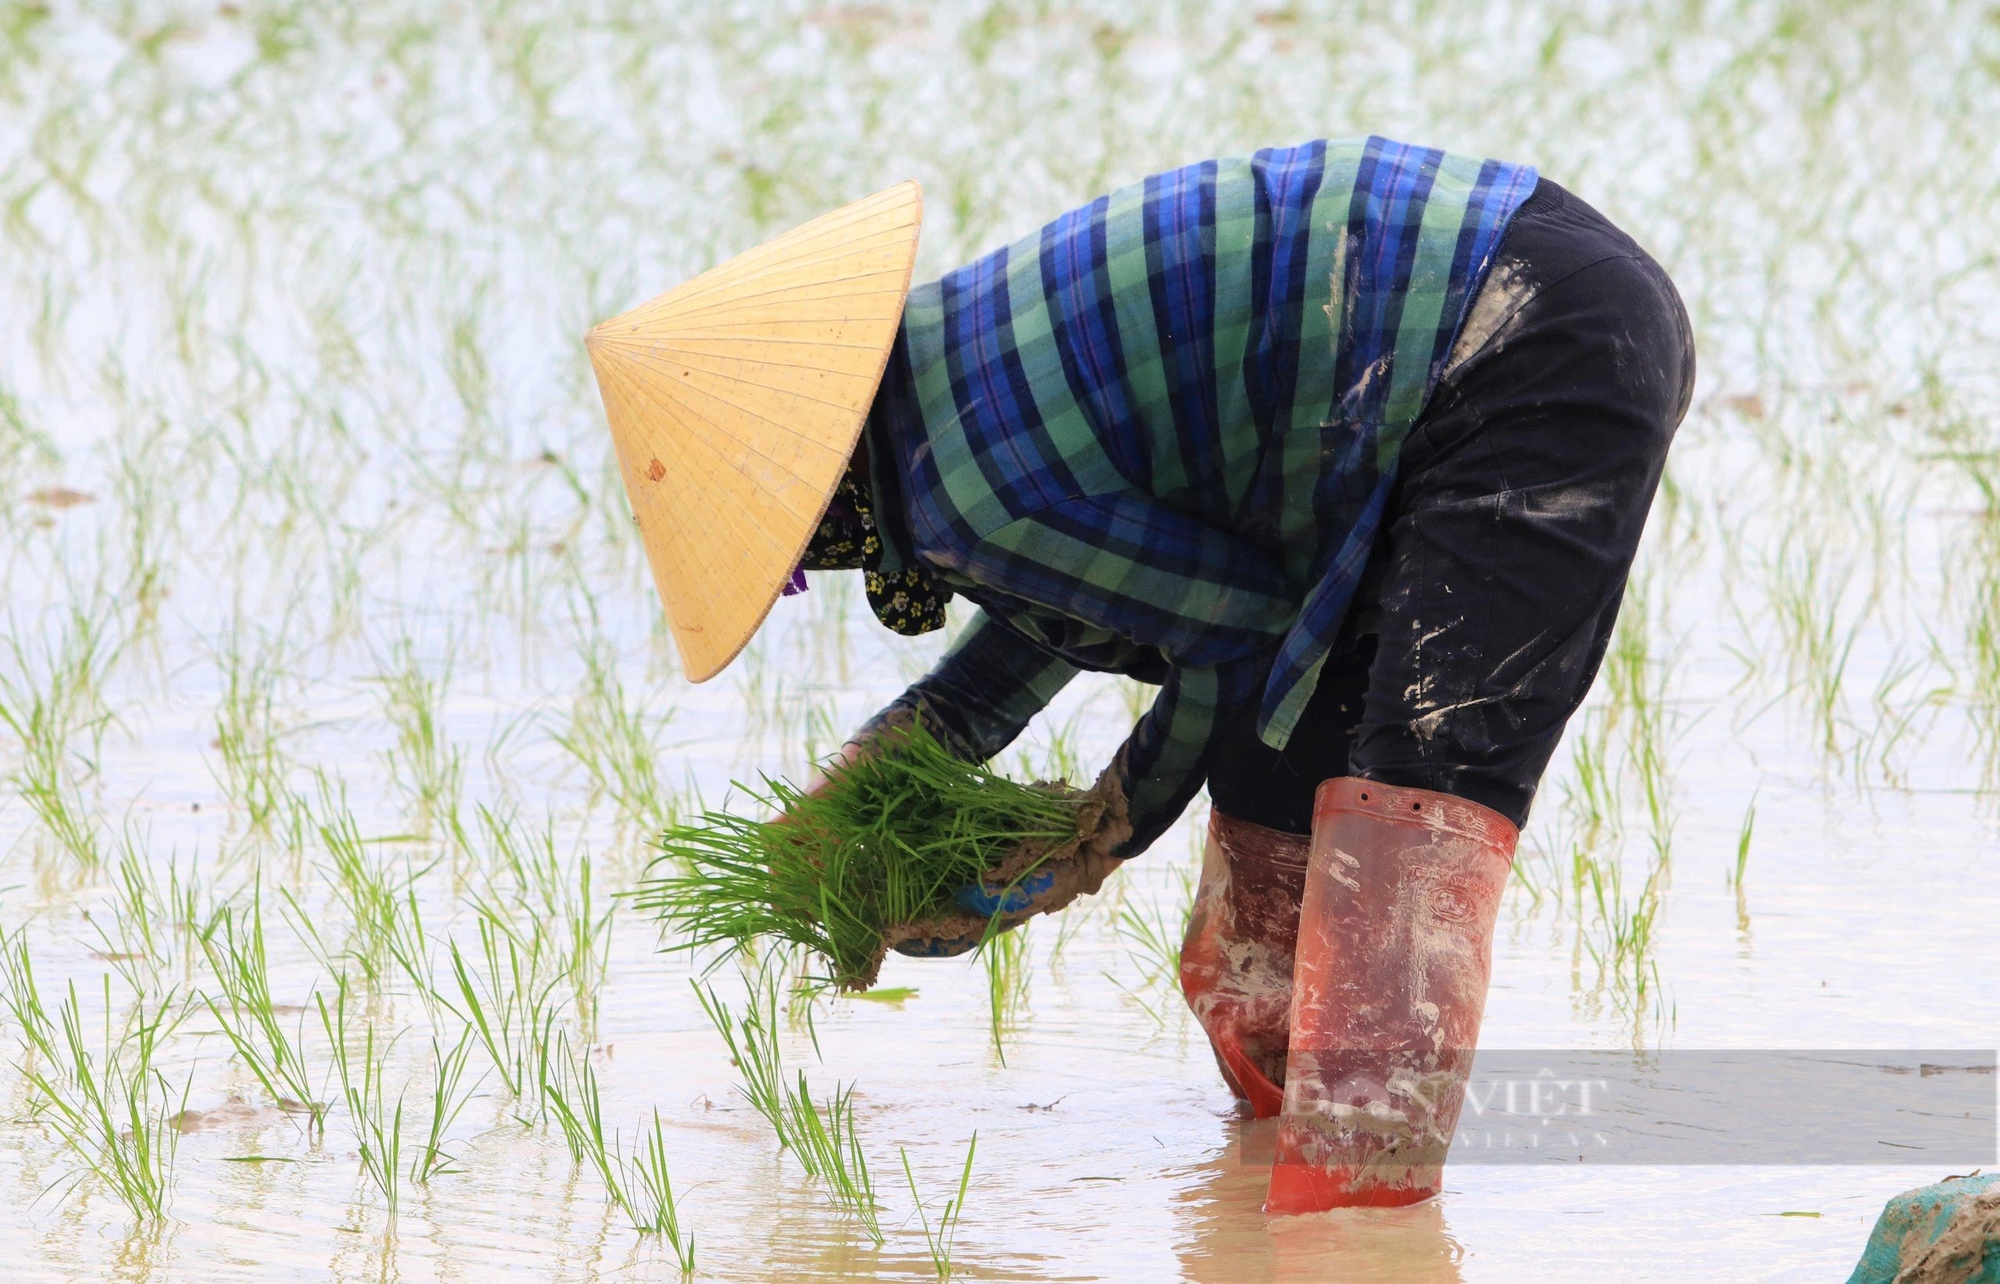 Thợ cấy lúa ở Nghệ An đắt khách, có nơi trả công gần nửa triệu một ngày vẫn khó thuê- Ảnh 5.